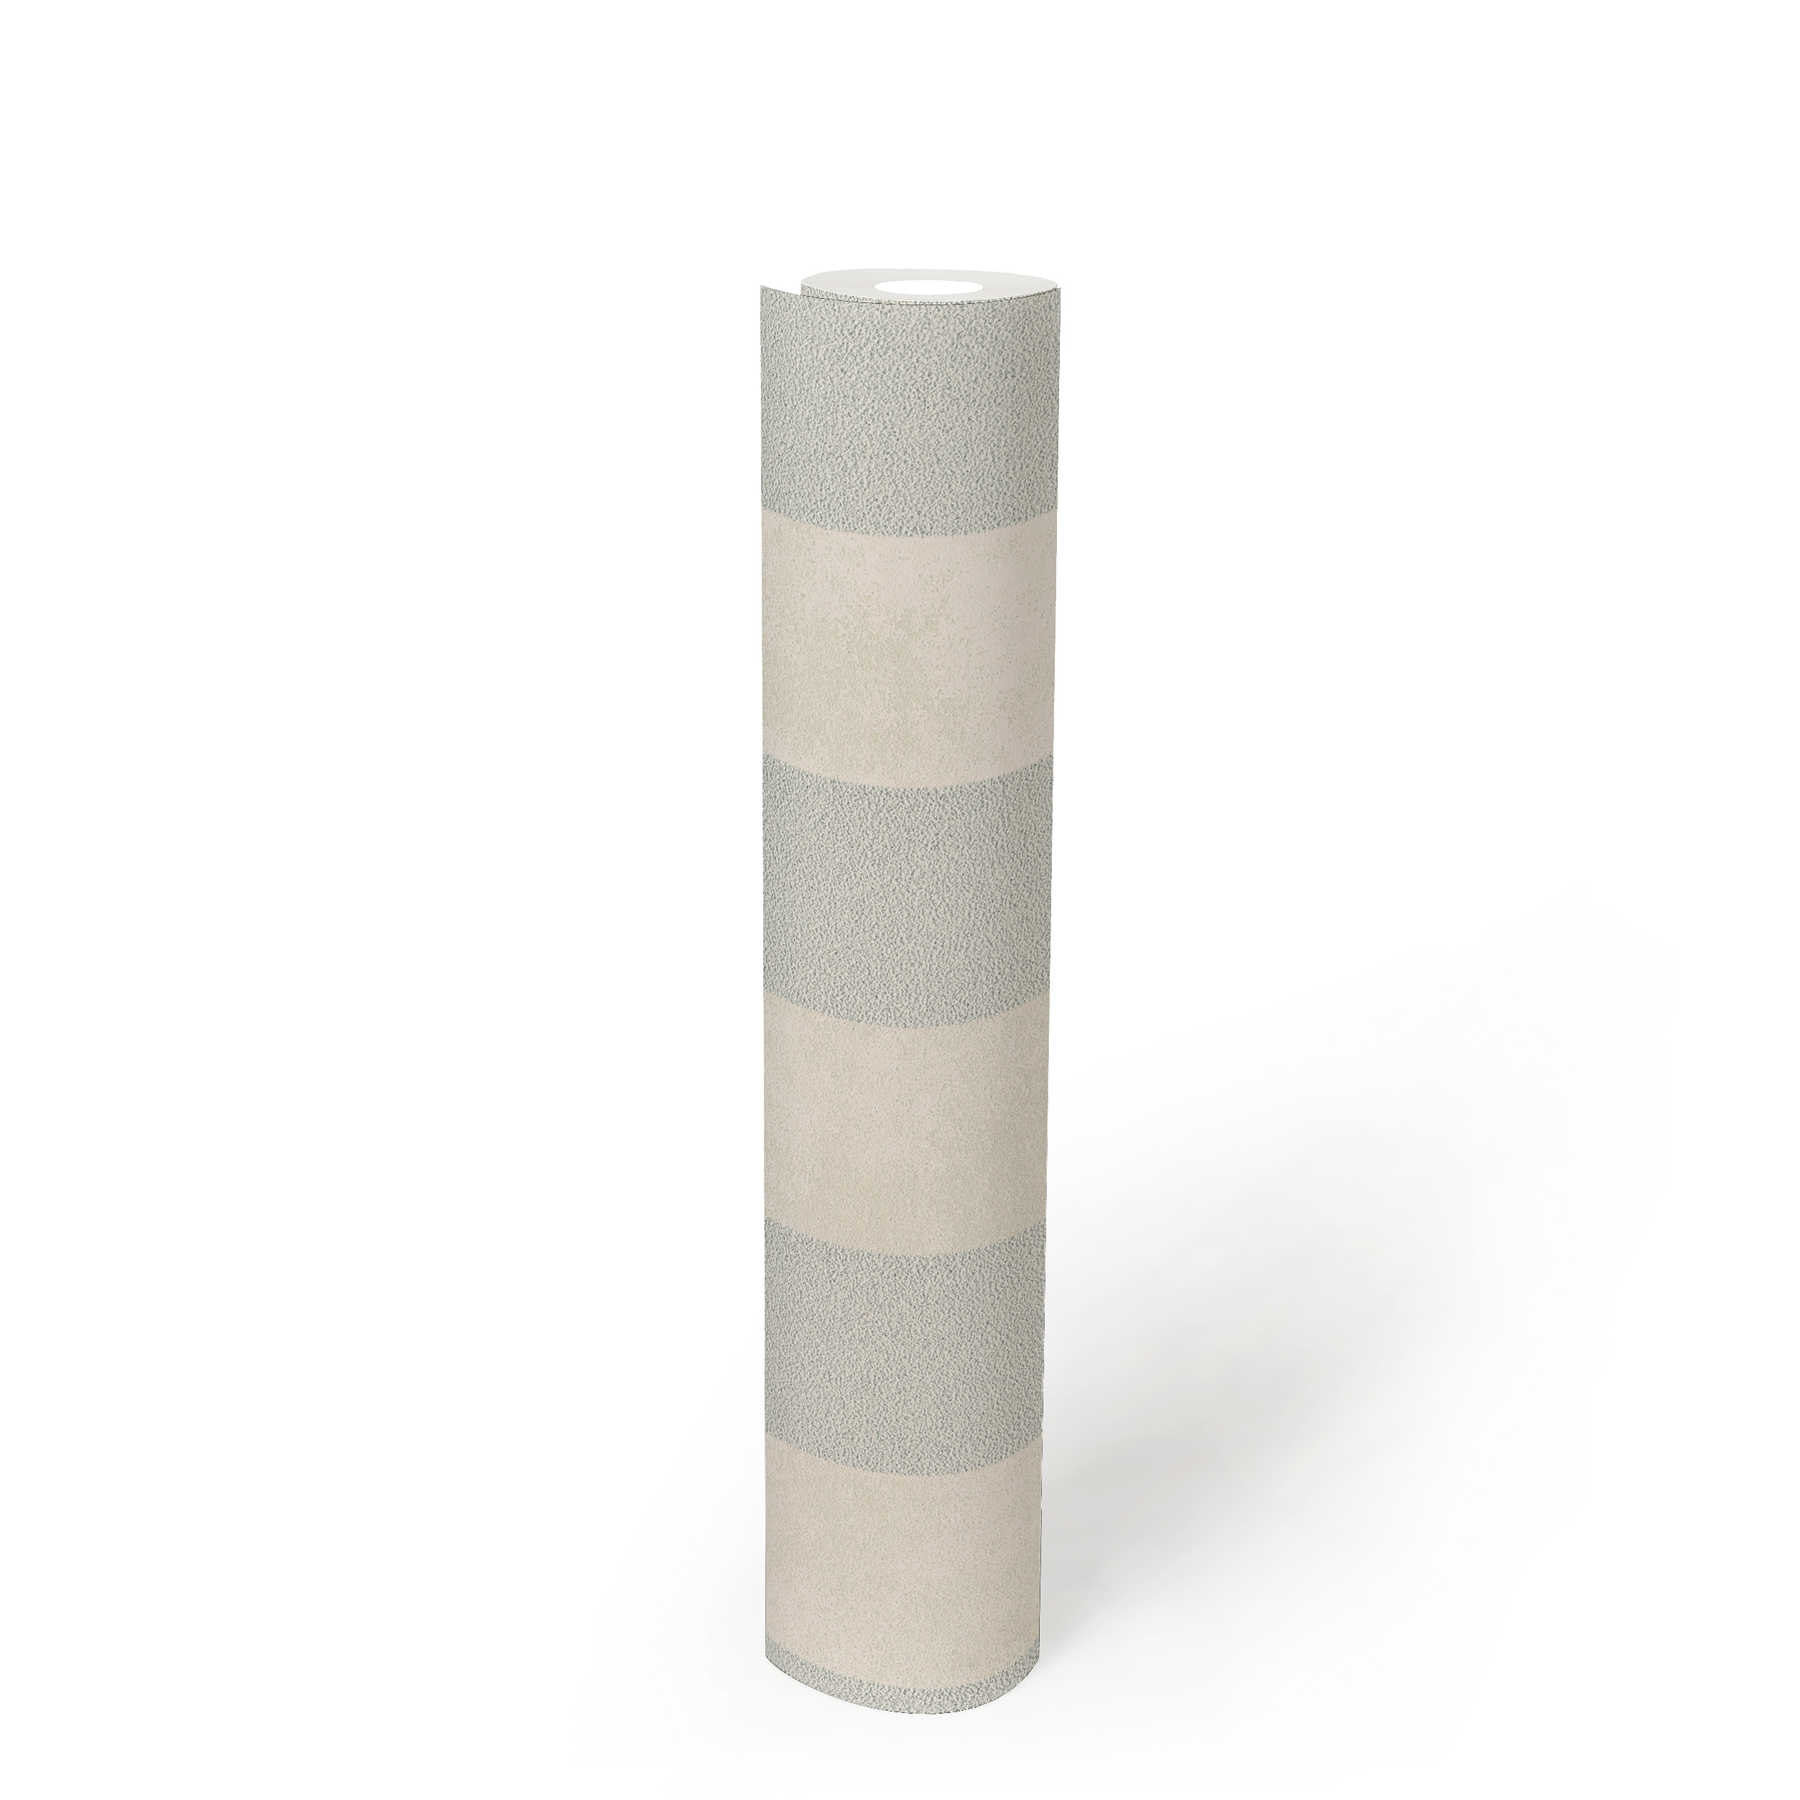             Blockstreifen-Tapete mit Farb- und Strukturmuster – Silber, Grau, Weiß
        